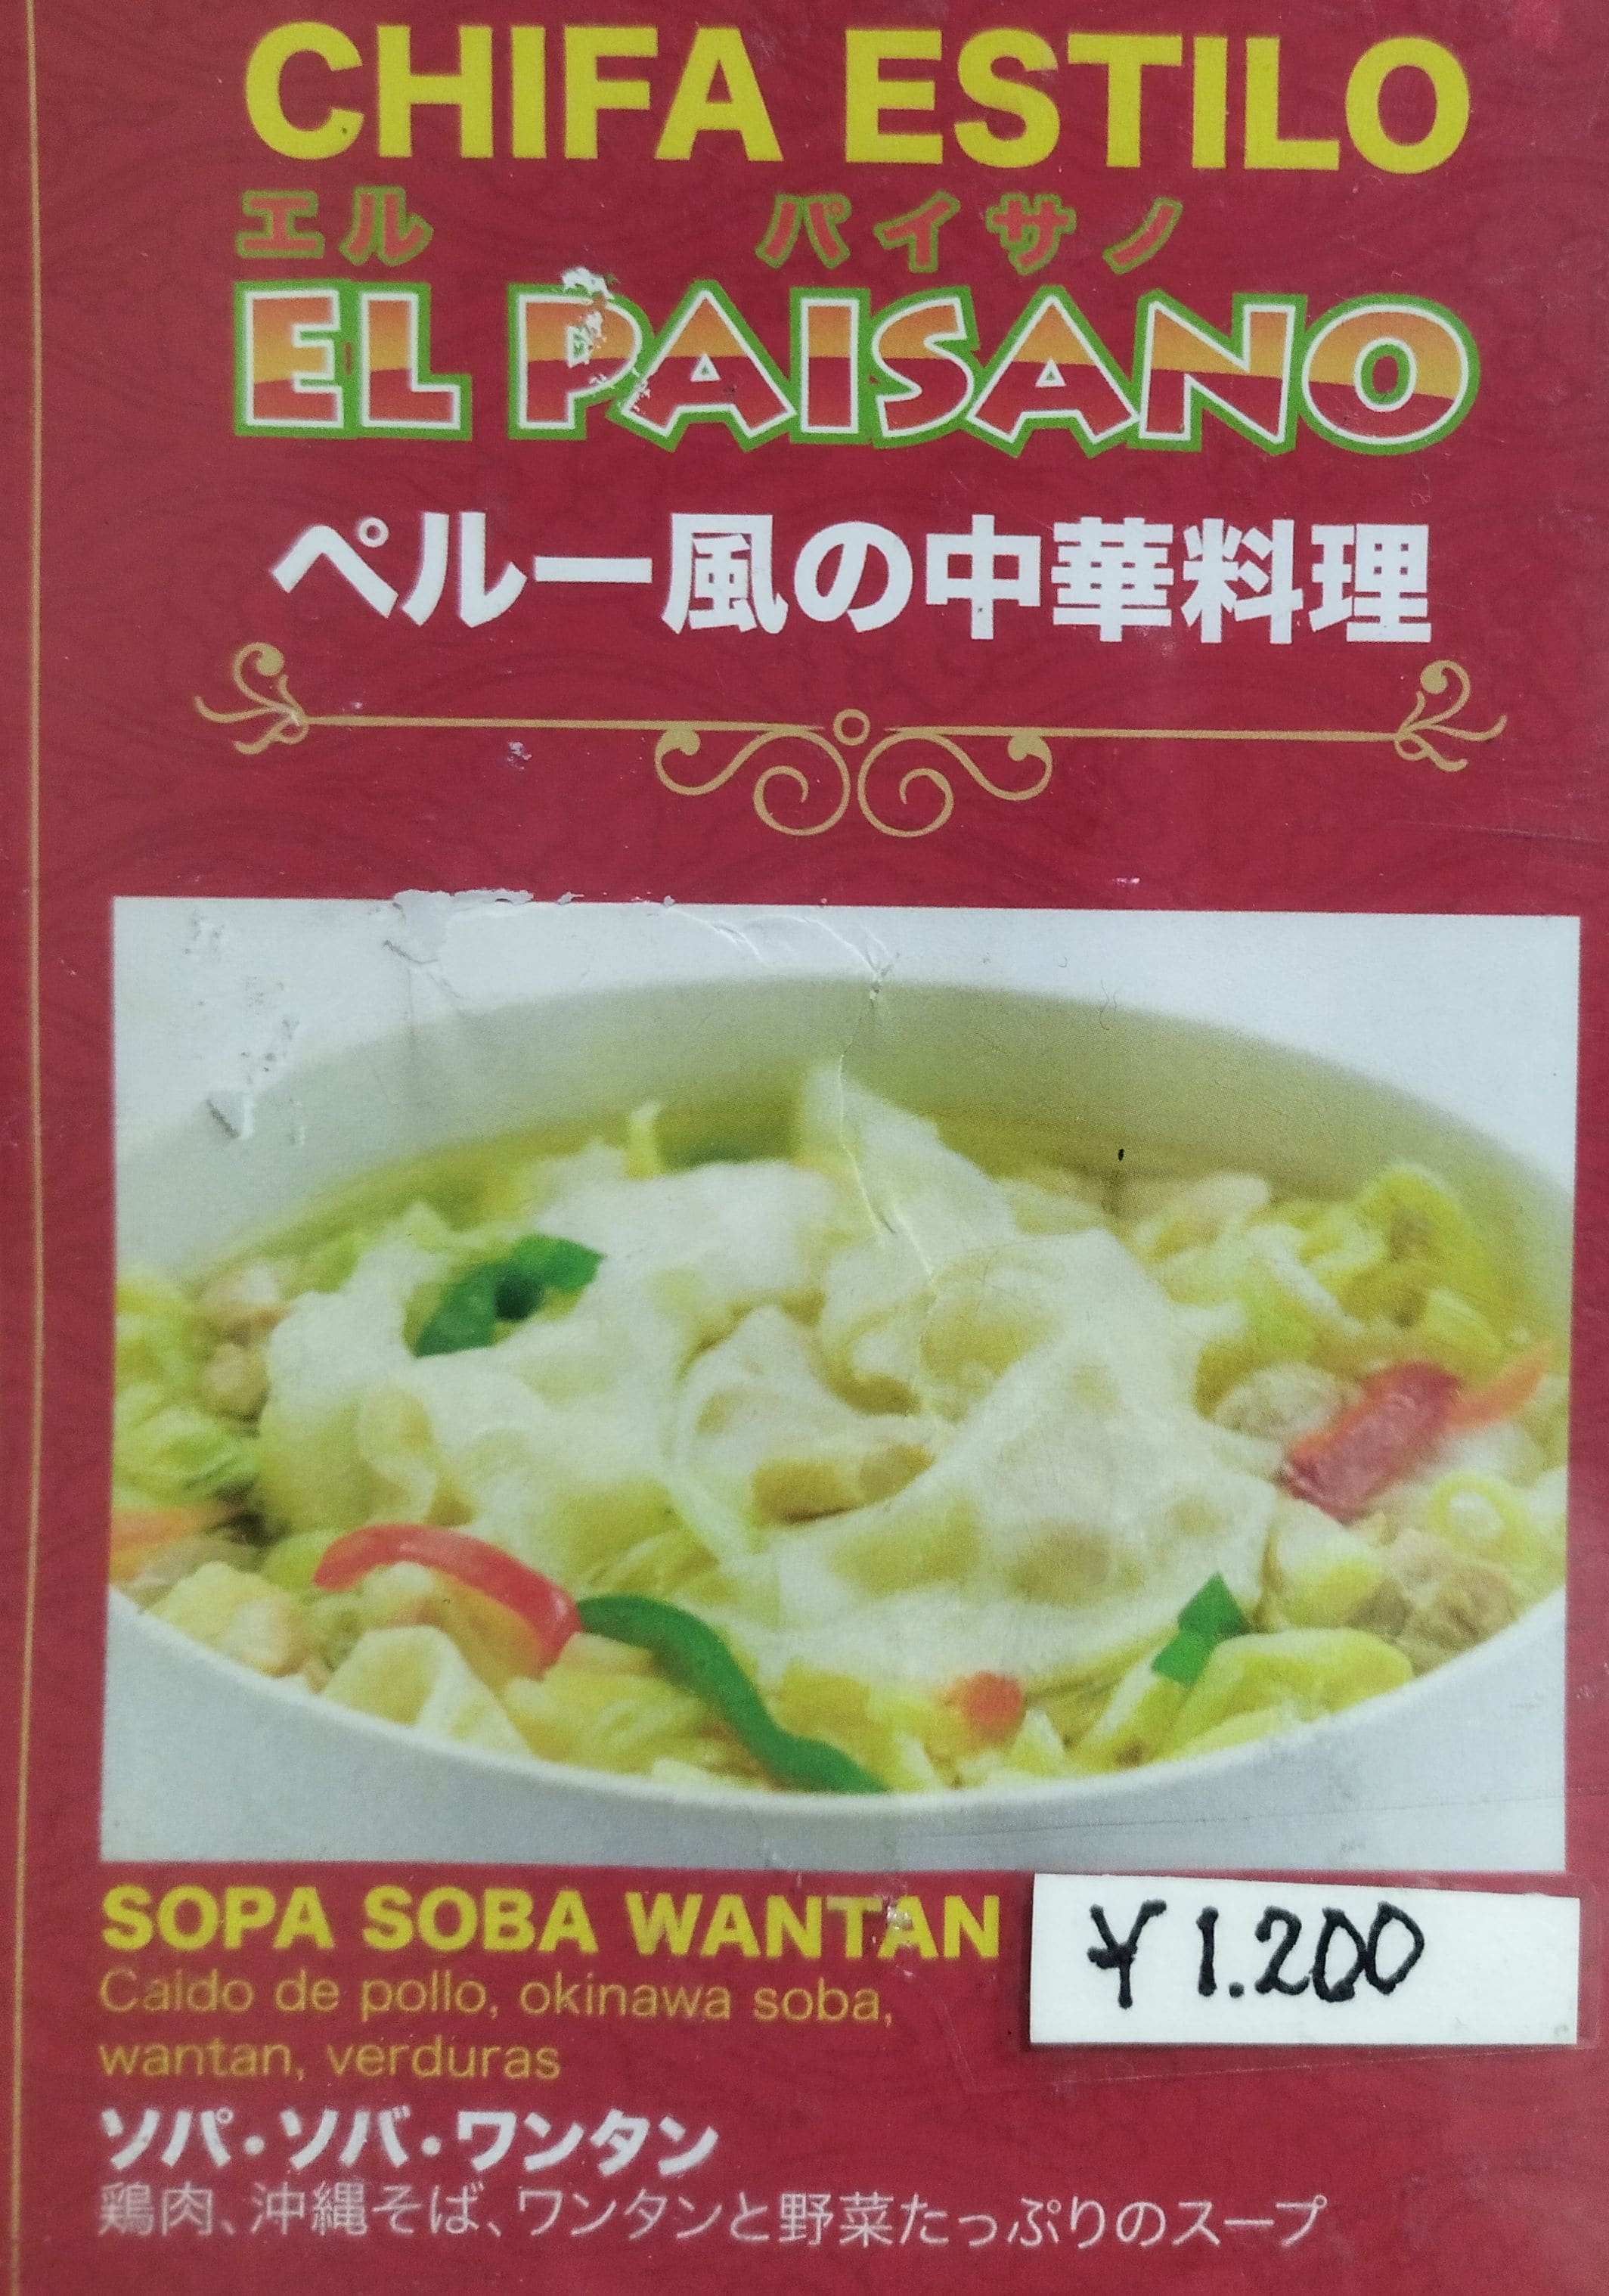 沖縄そばとペルー中華料理のワンタンスープを掛け合わせたようなメニュー「SOPA SOBA WANTAN」